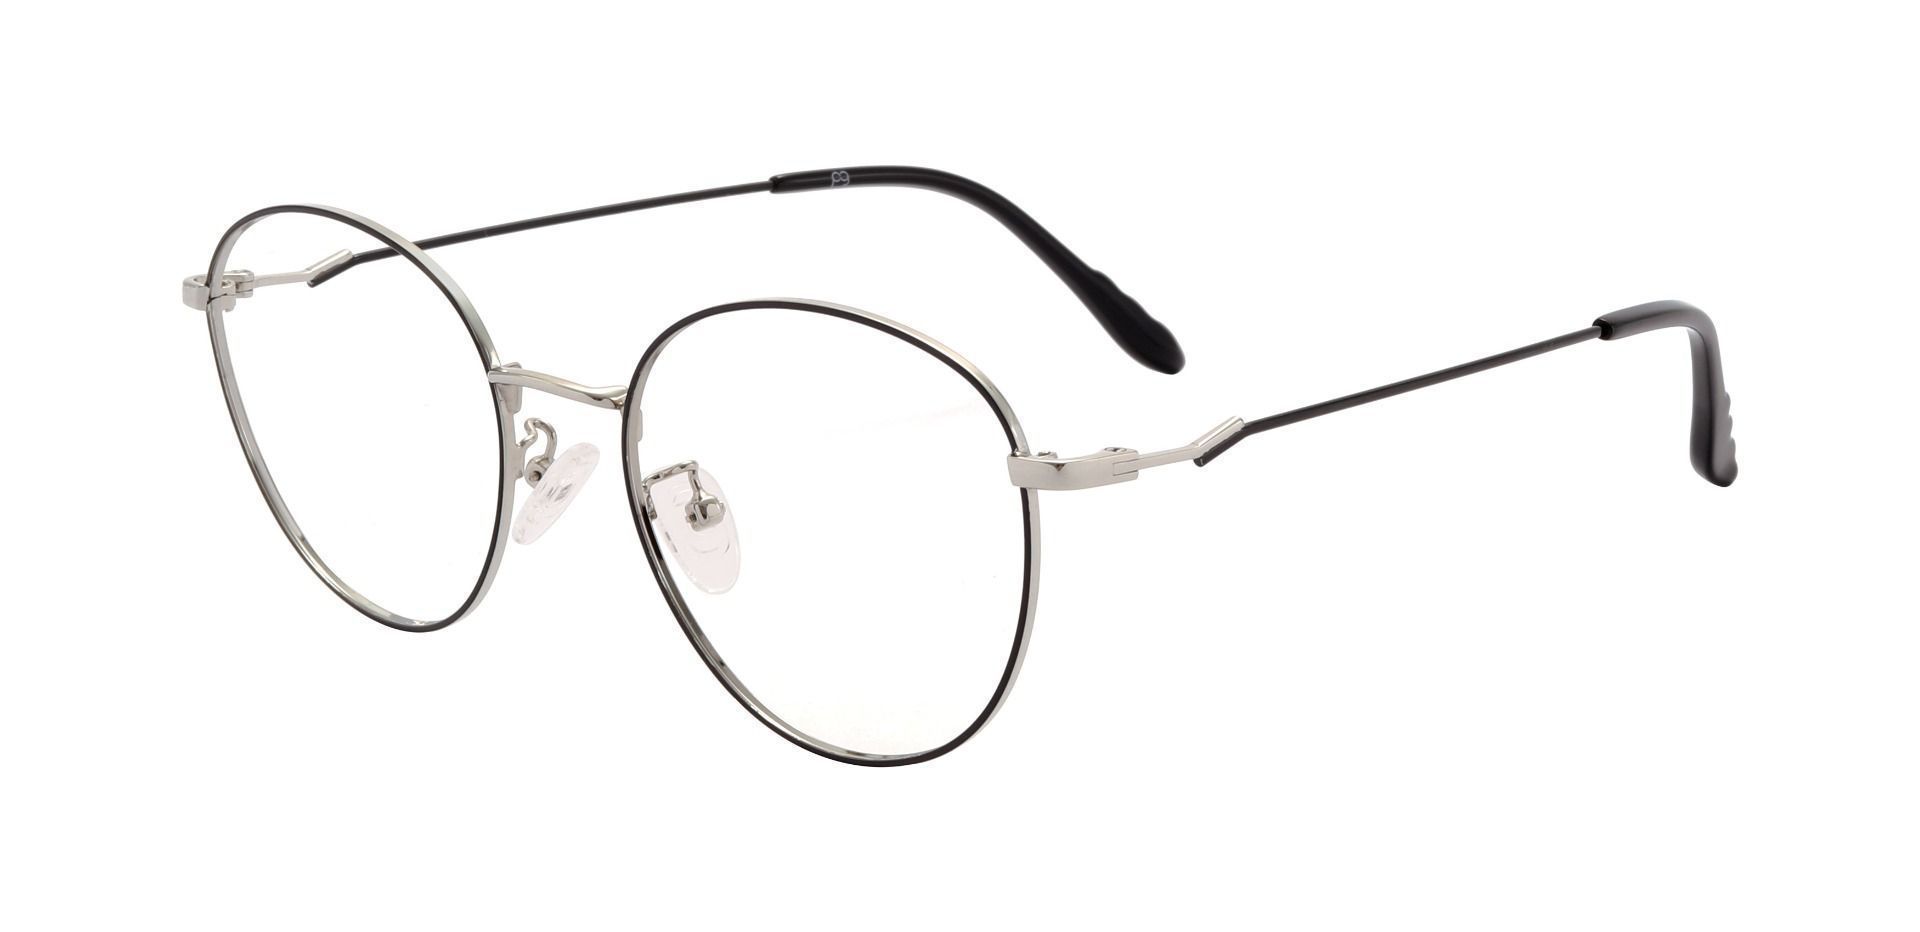 Calliope Oval Prescription Glasses - Black